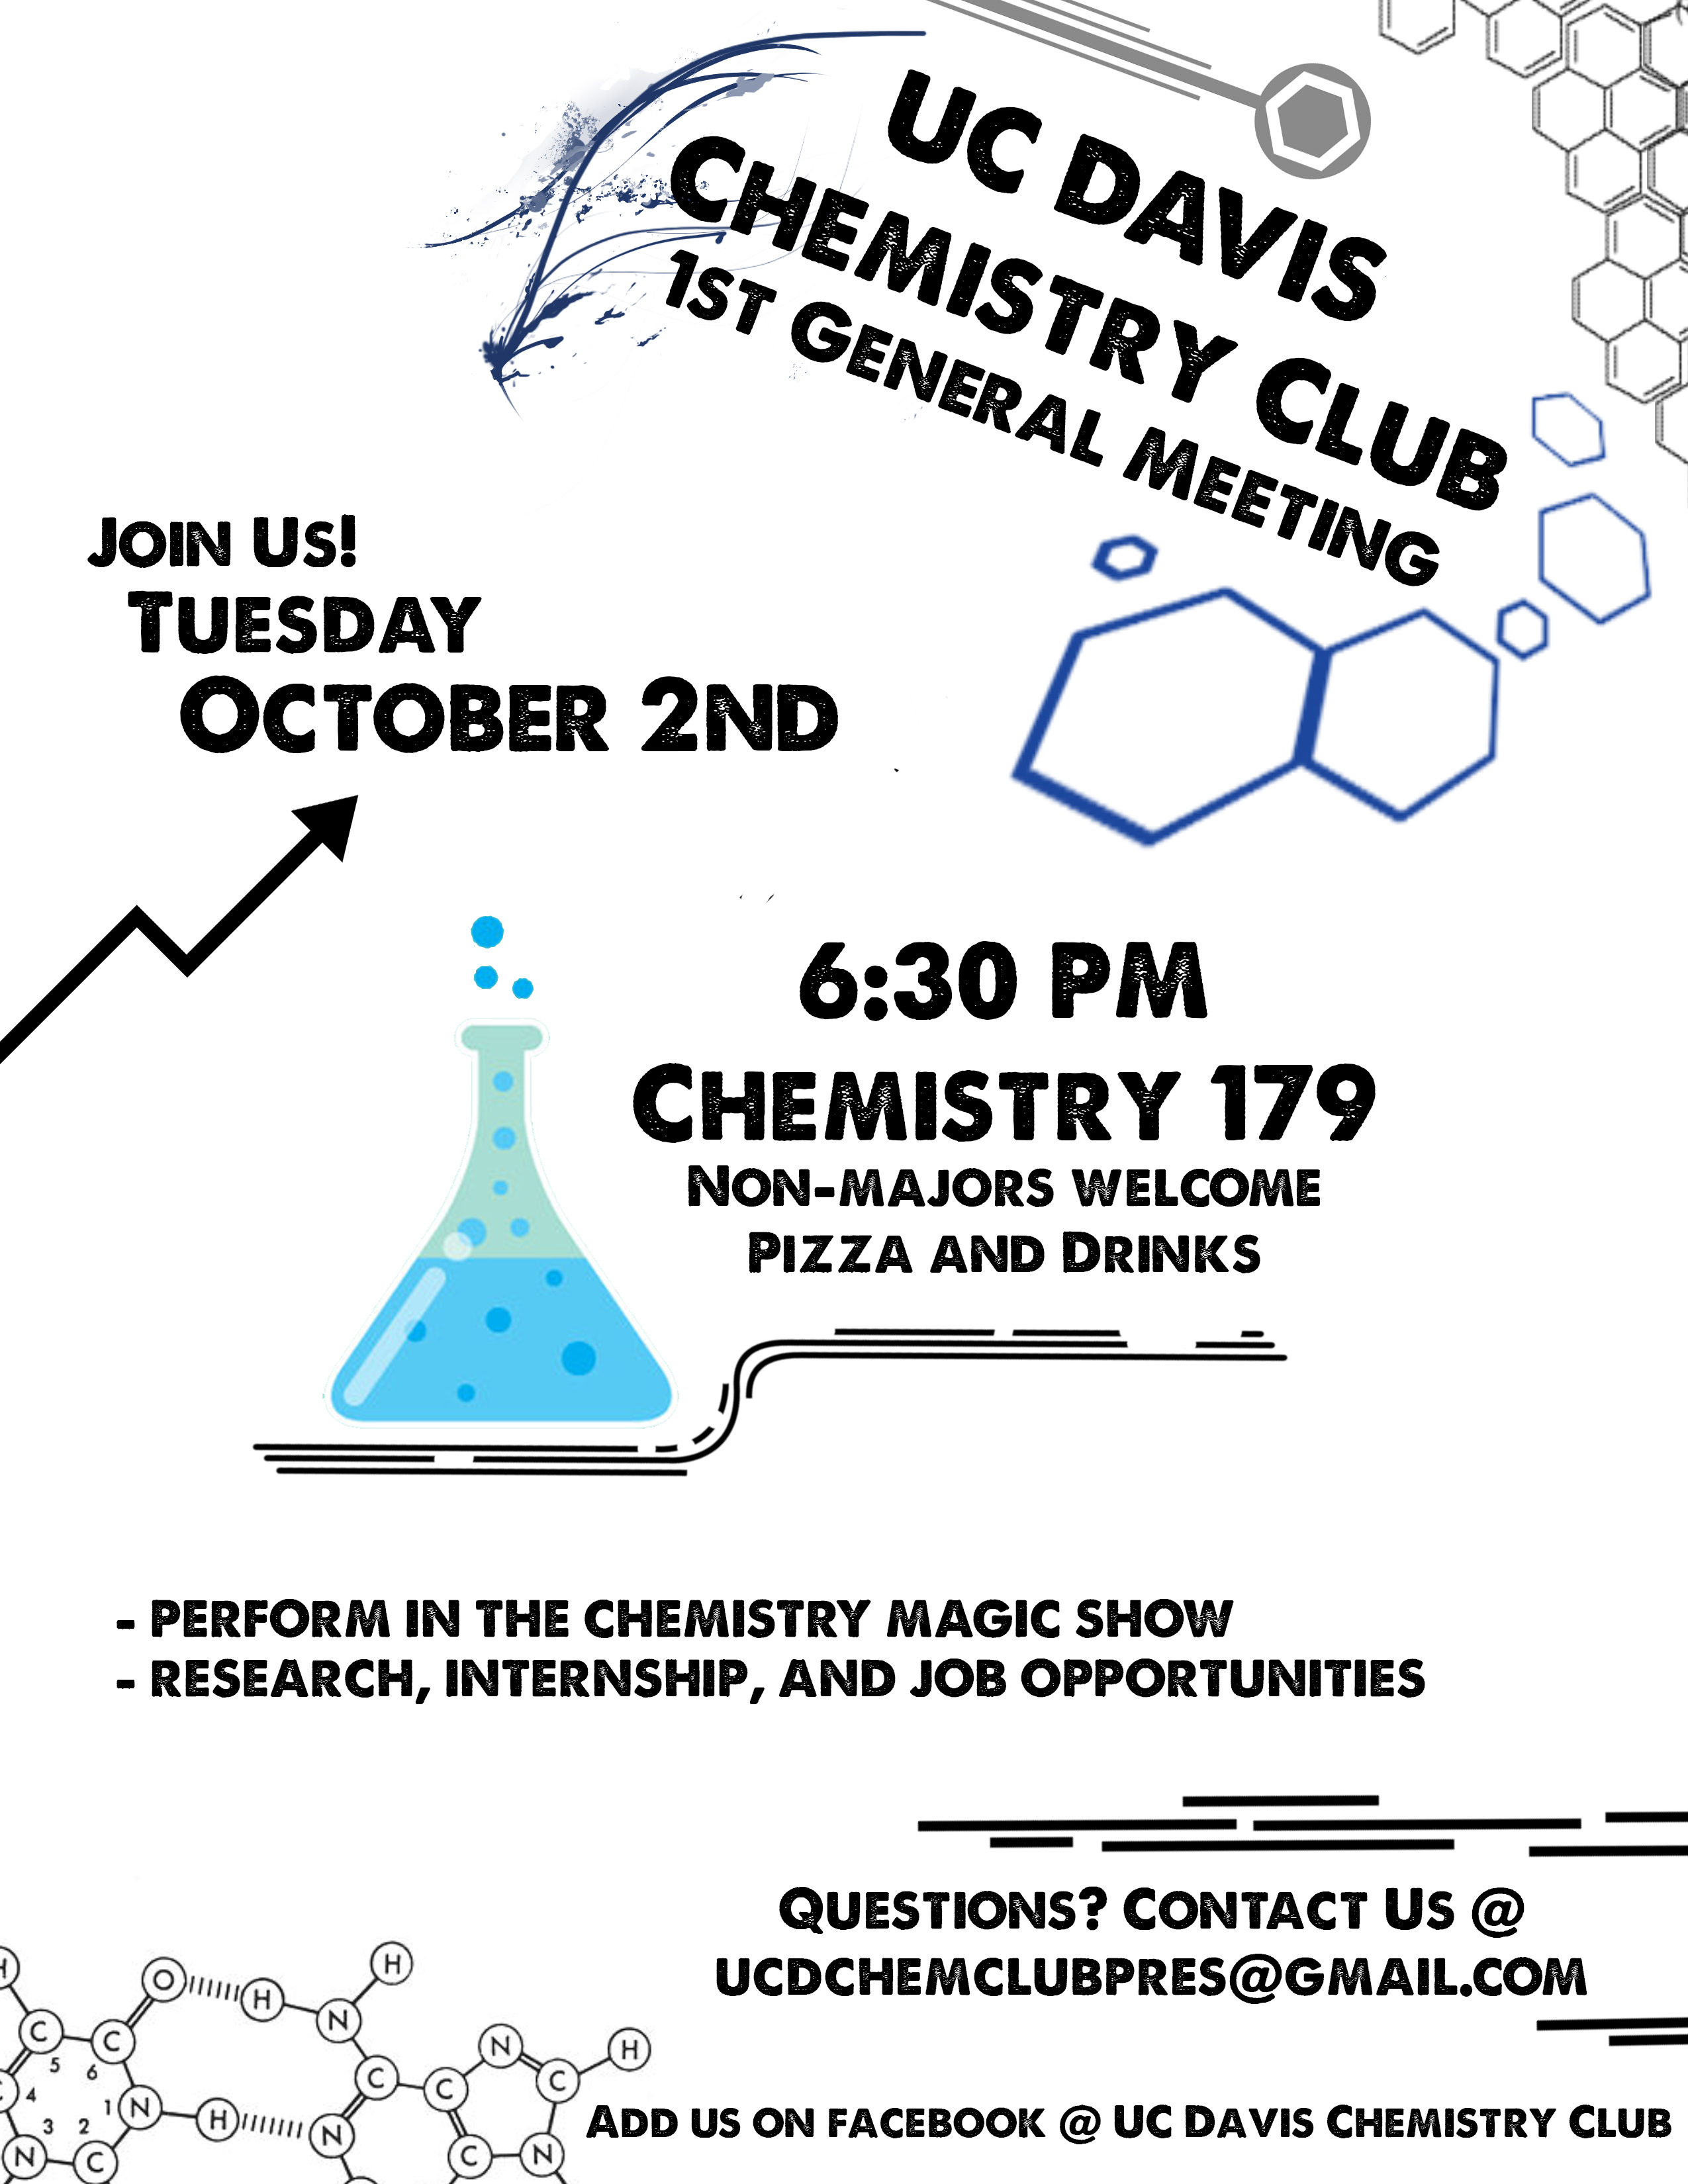 UC Davis Chemistry Club